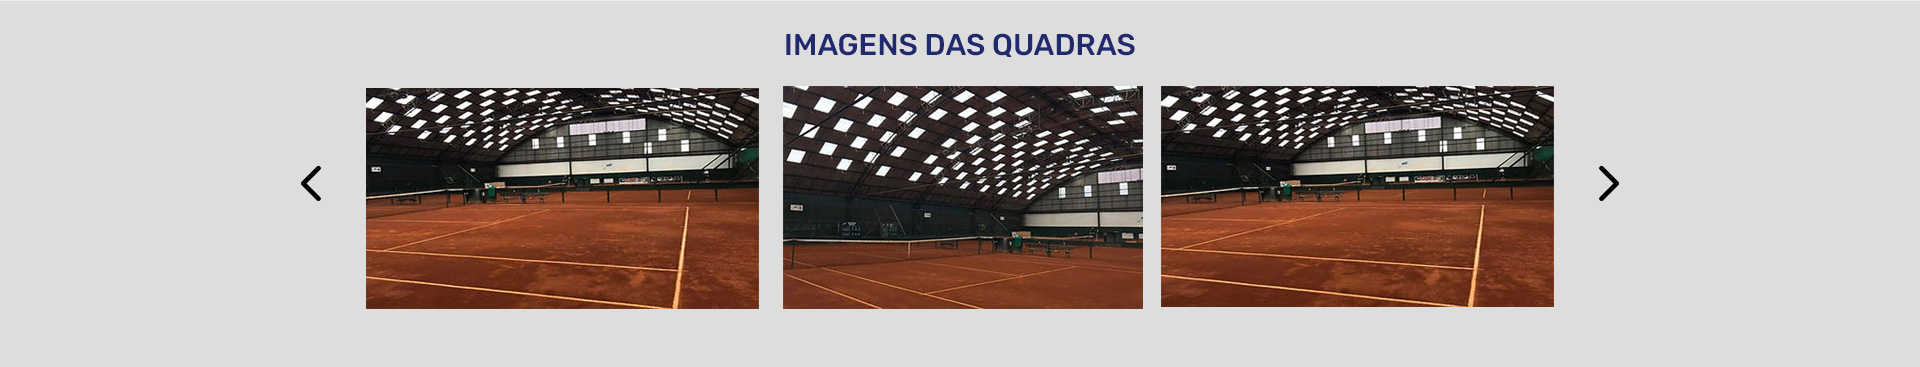 paginas-internas-tenis_04